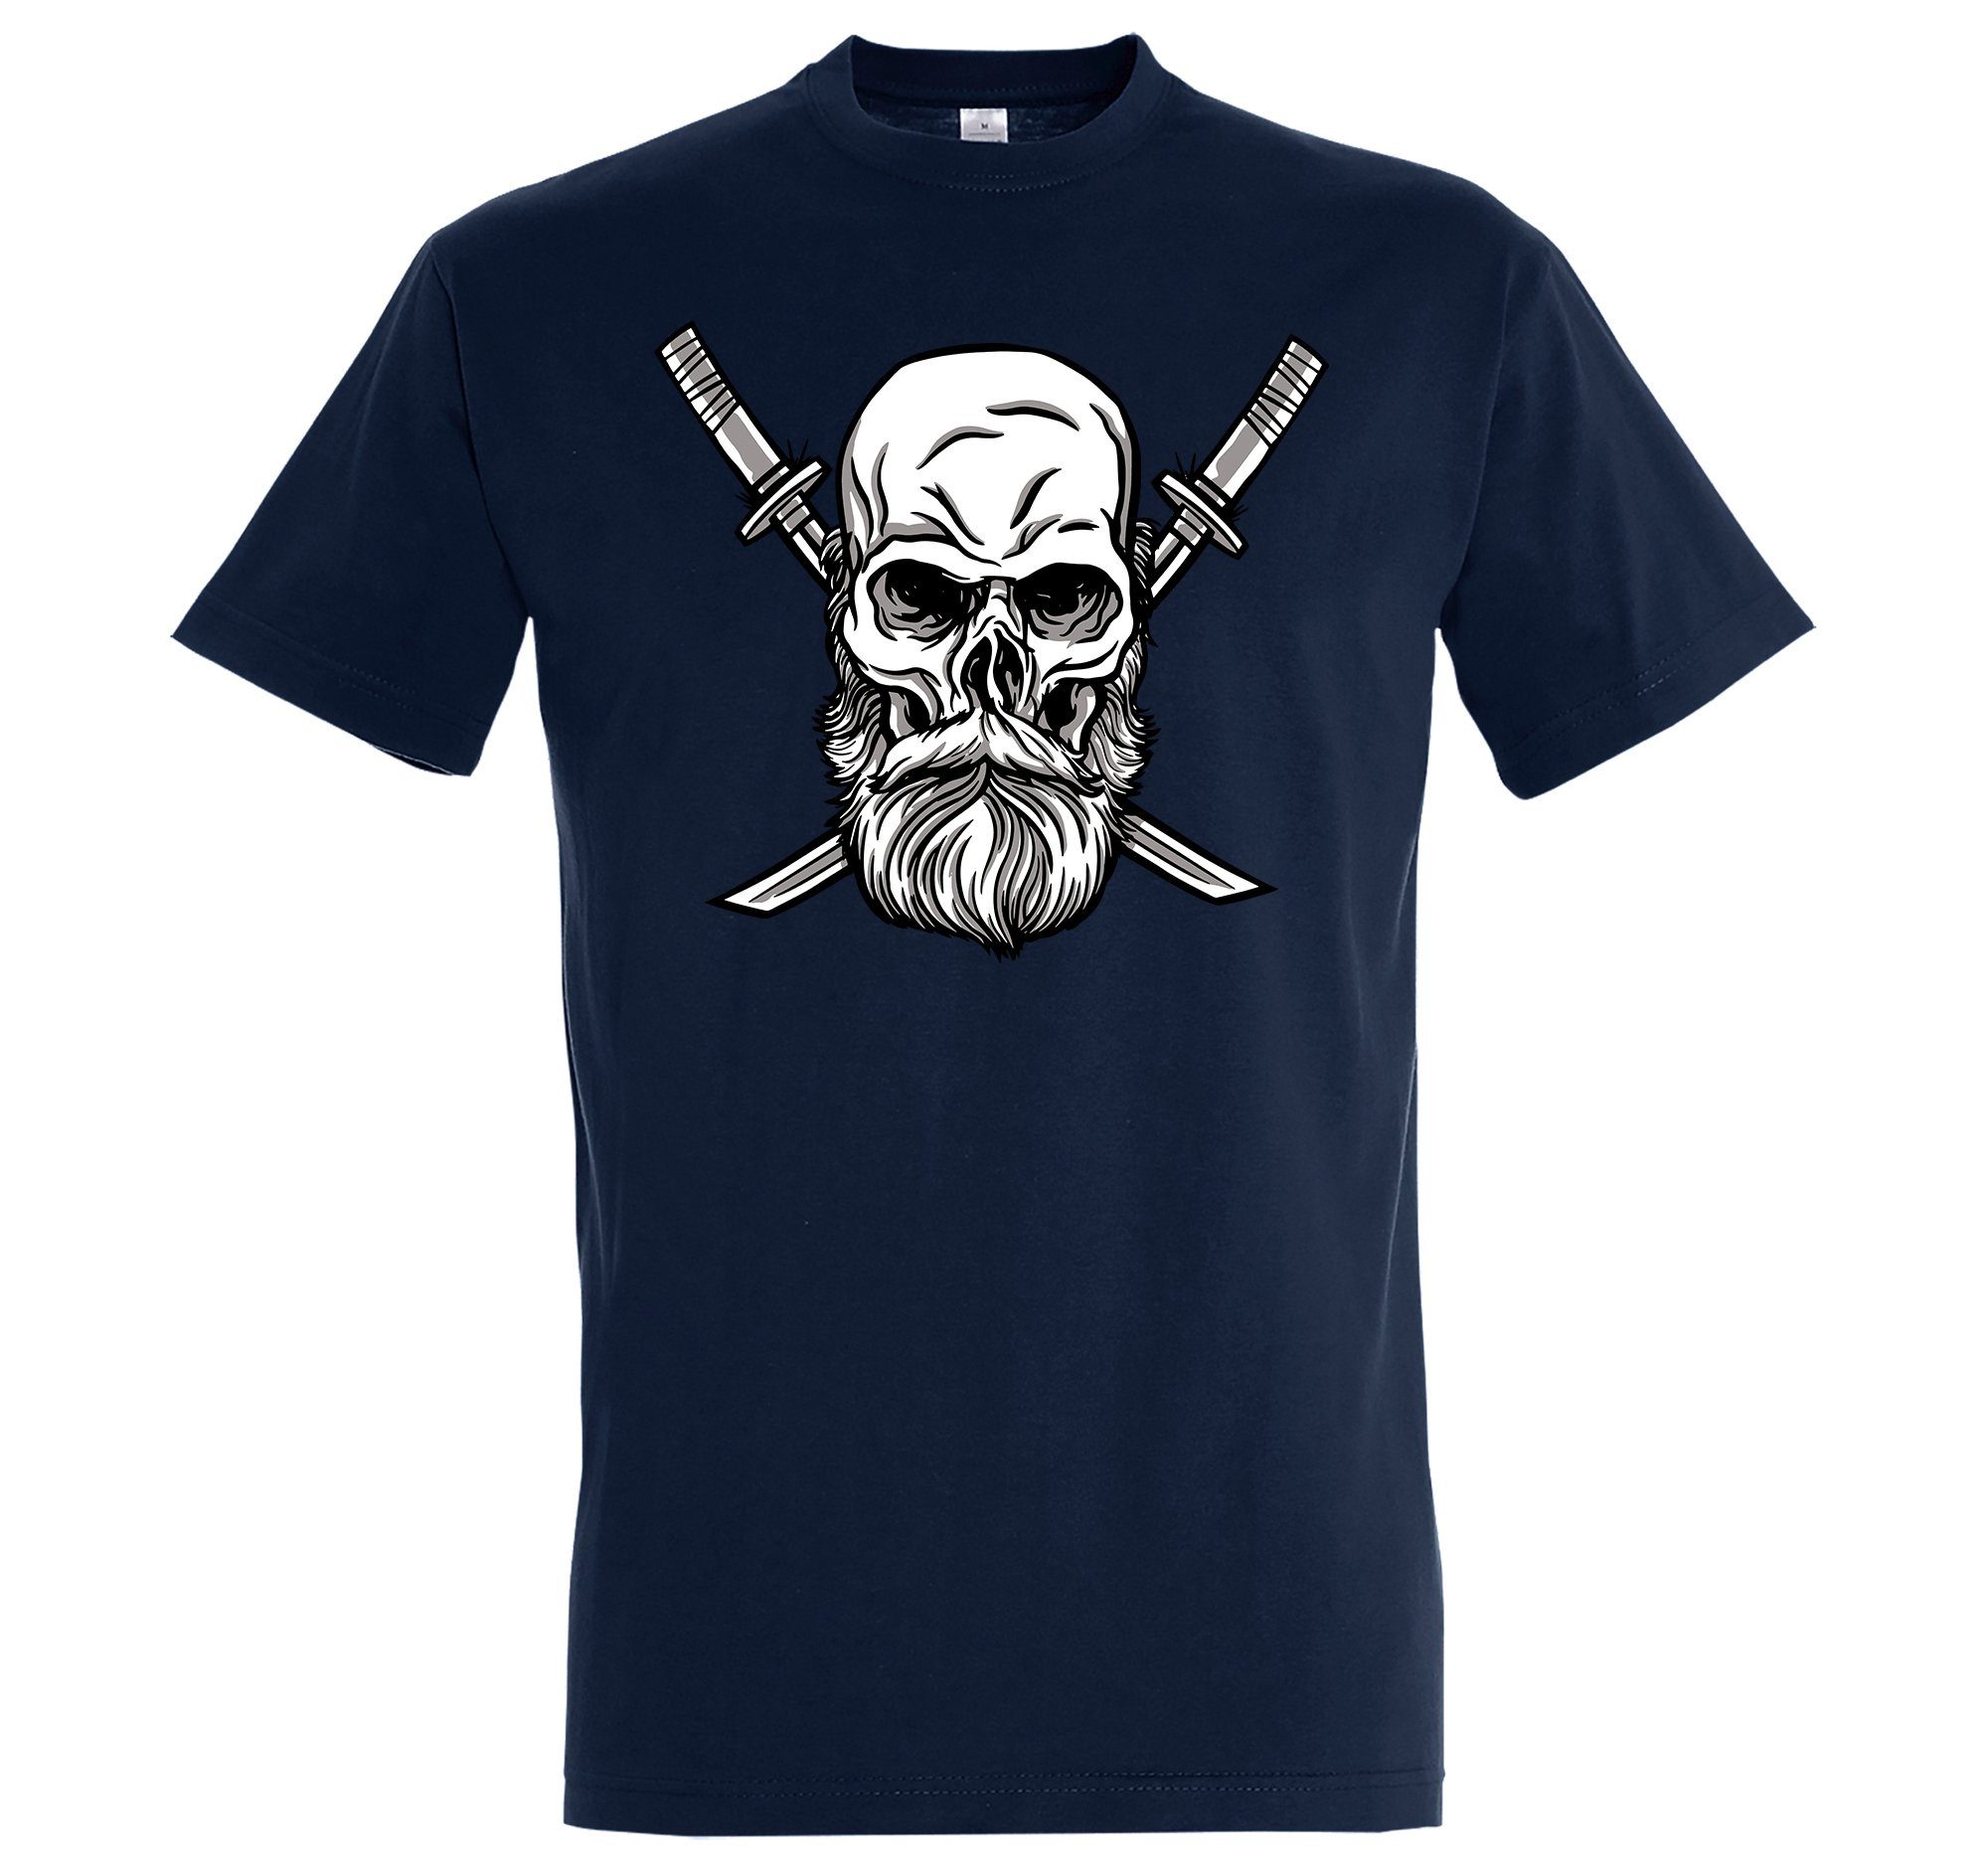 Frontrpint mit Katana T-Shirt Designz Shirt Schädel Herren Youth Navyblau trendigem